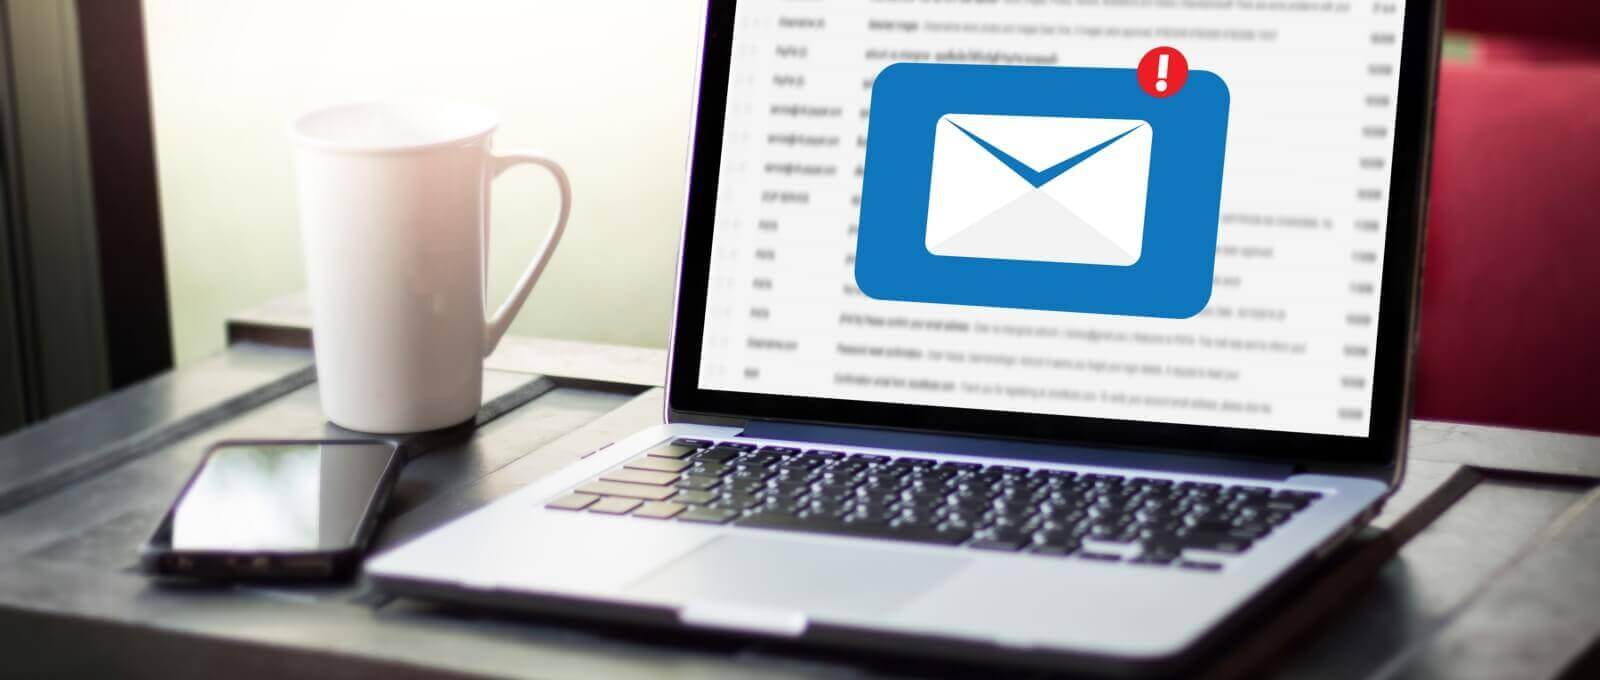 Προειδοποίηση από τη Δίωξη Ηλεκτρονικού Εγκλήματος:Αποστολή κακόβουλου λογισμικού με email